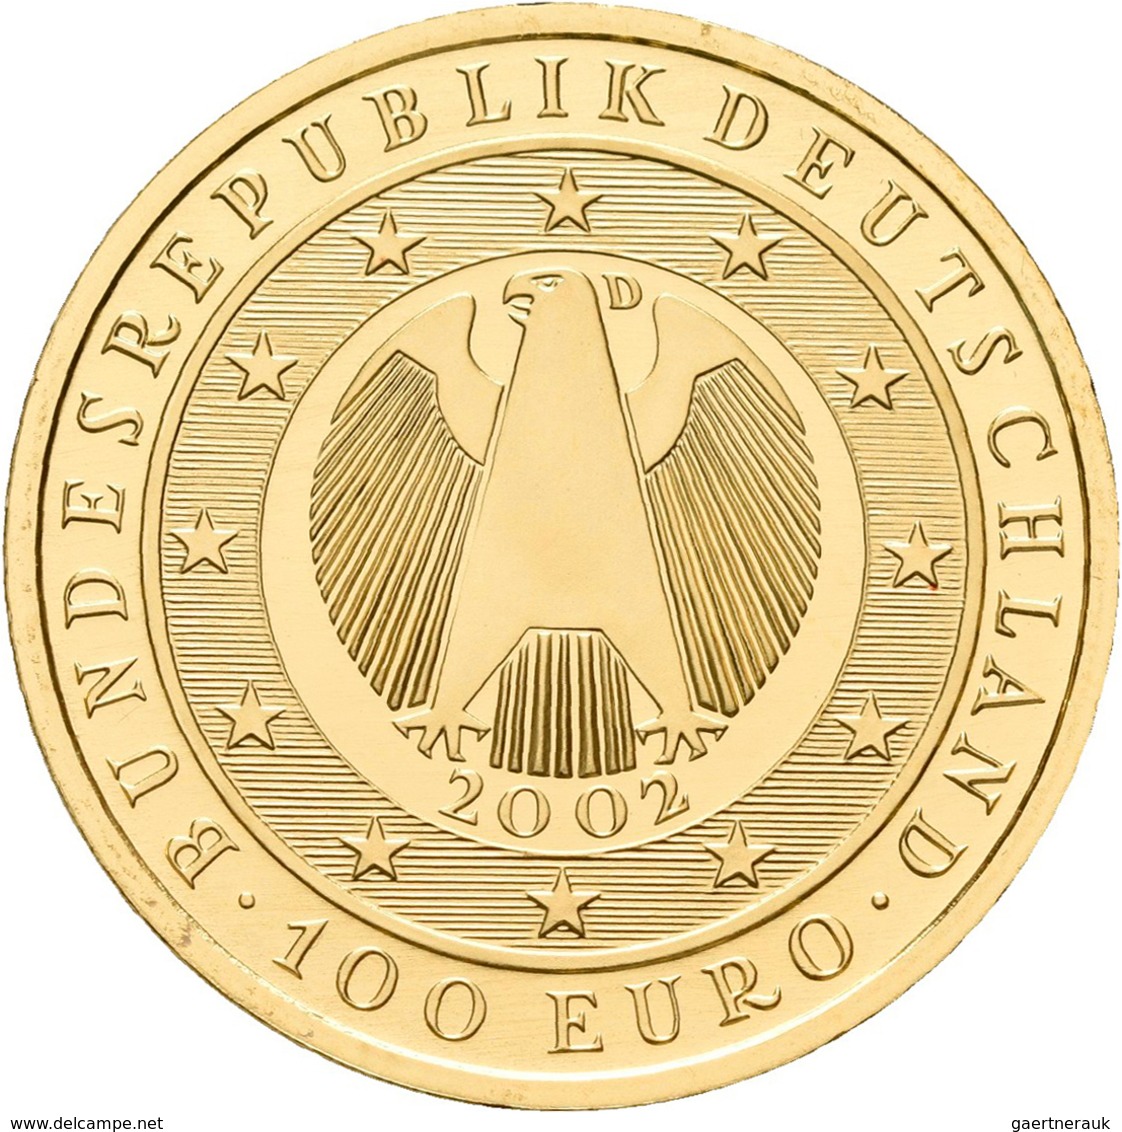 Deutschland - Anlagegold: 100 Euro 2002 Währungsunion (D), In Originalkapsel, Jaeger 493, Gold 999/1 - Deutschland